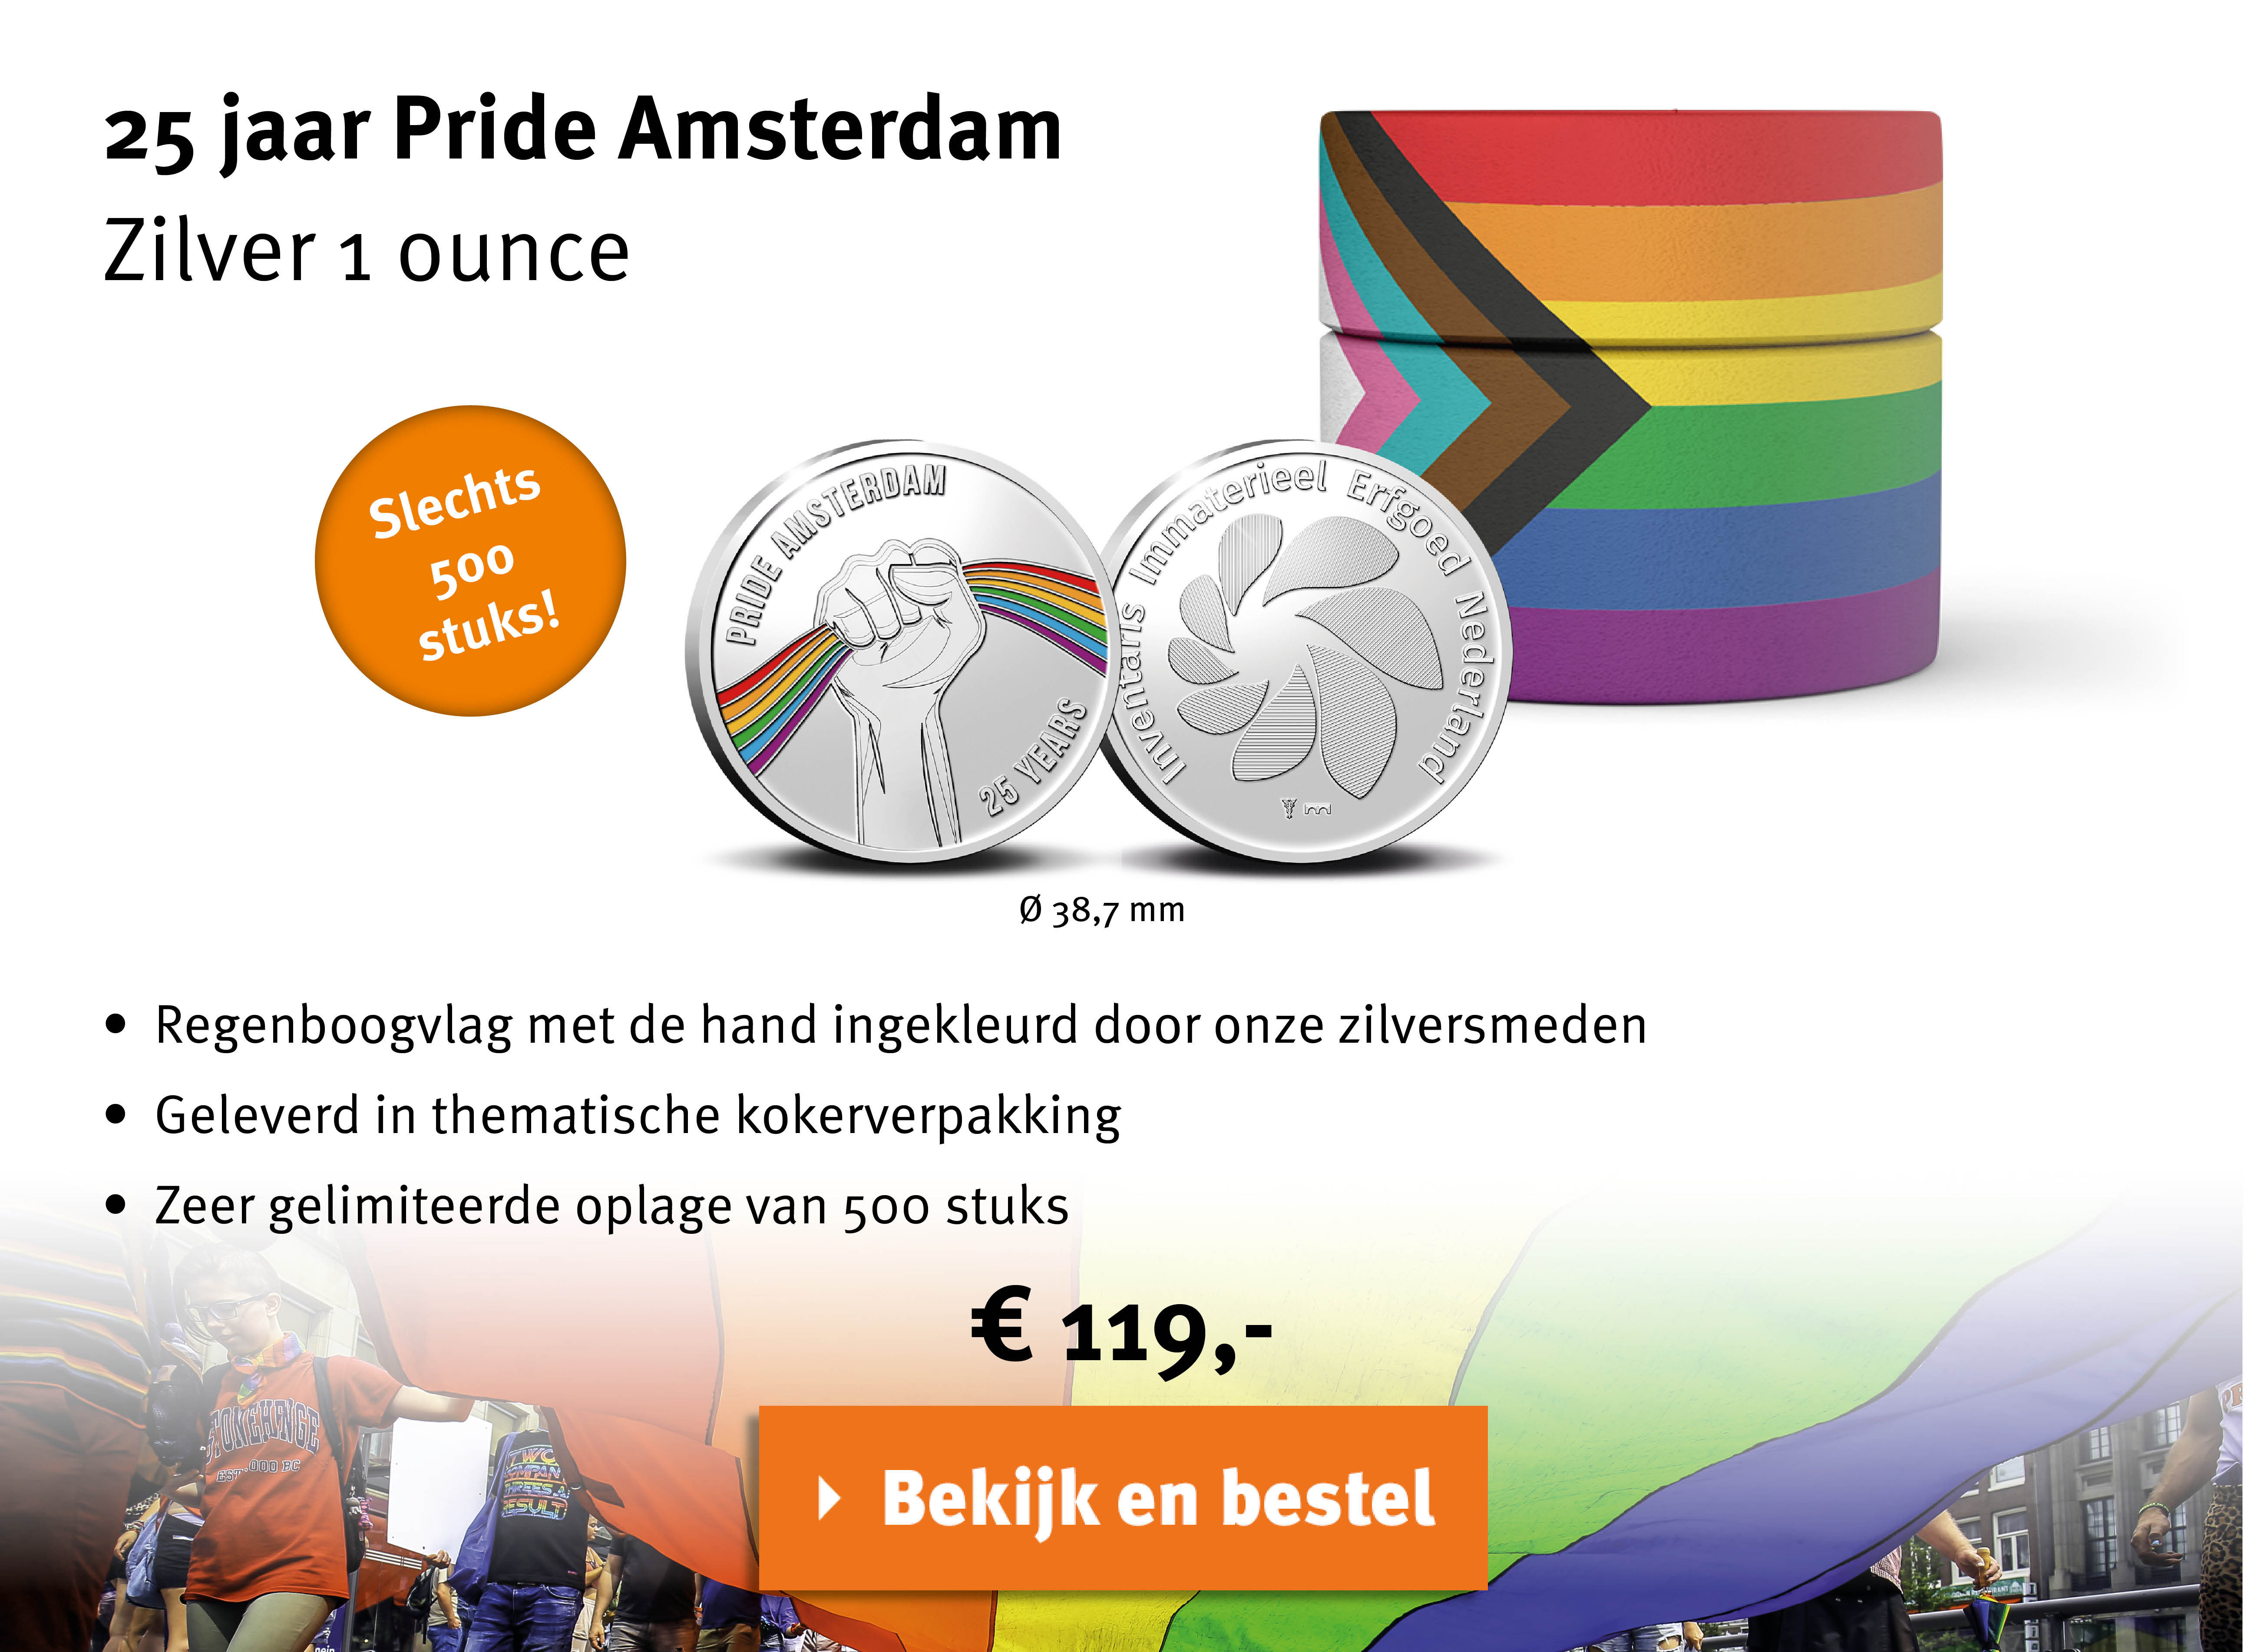 Bekijk en bestel: 25 jaar Pride Amsterdam Zilver 1 ounce